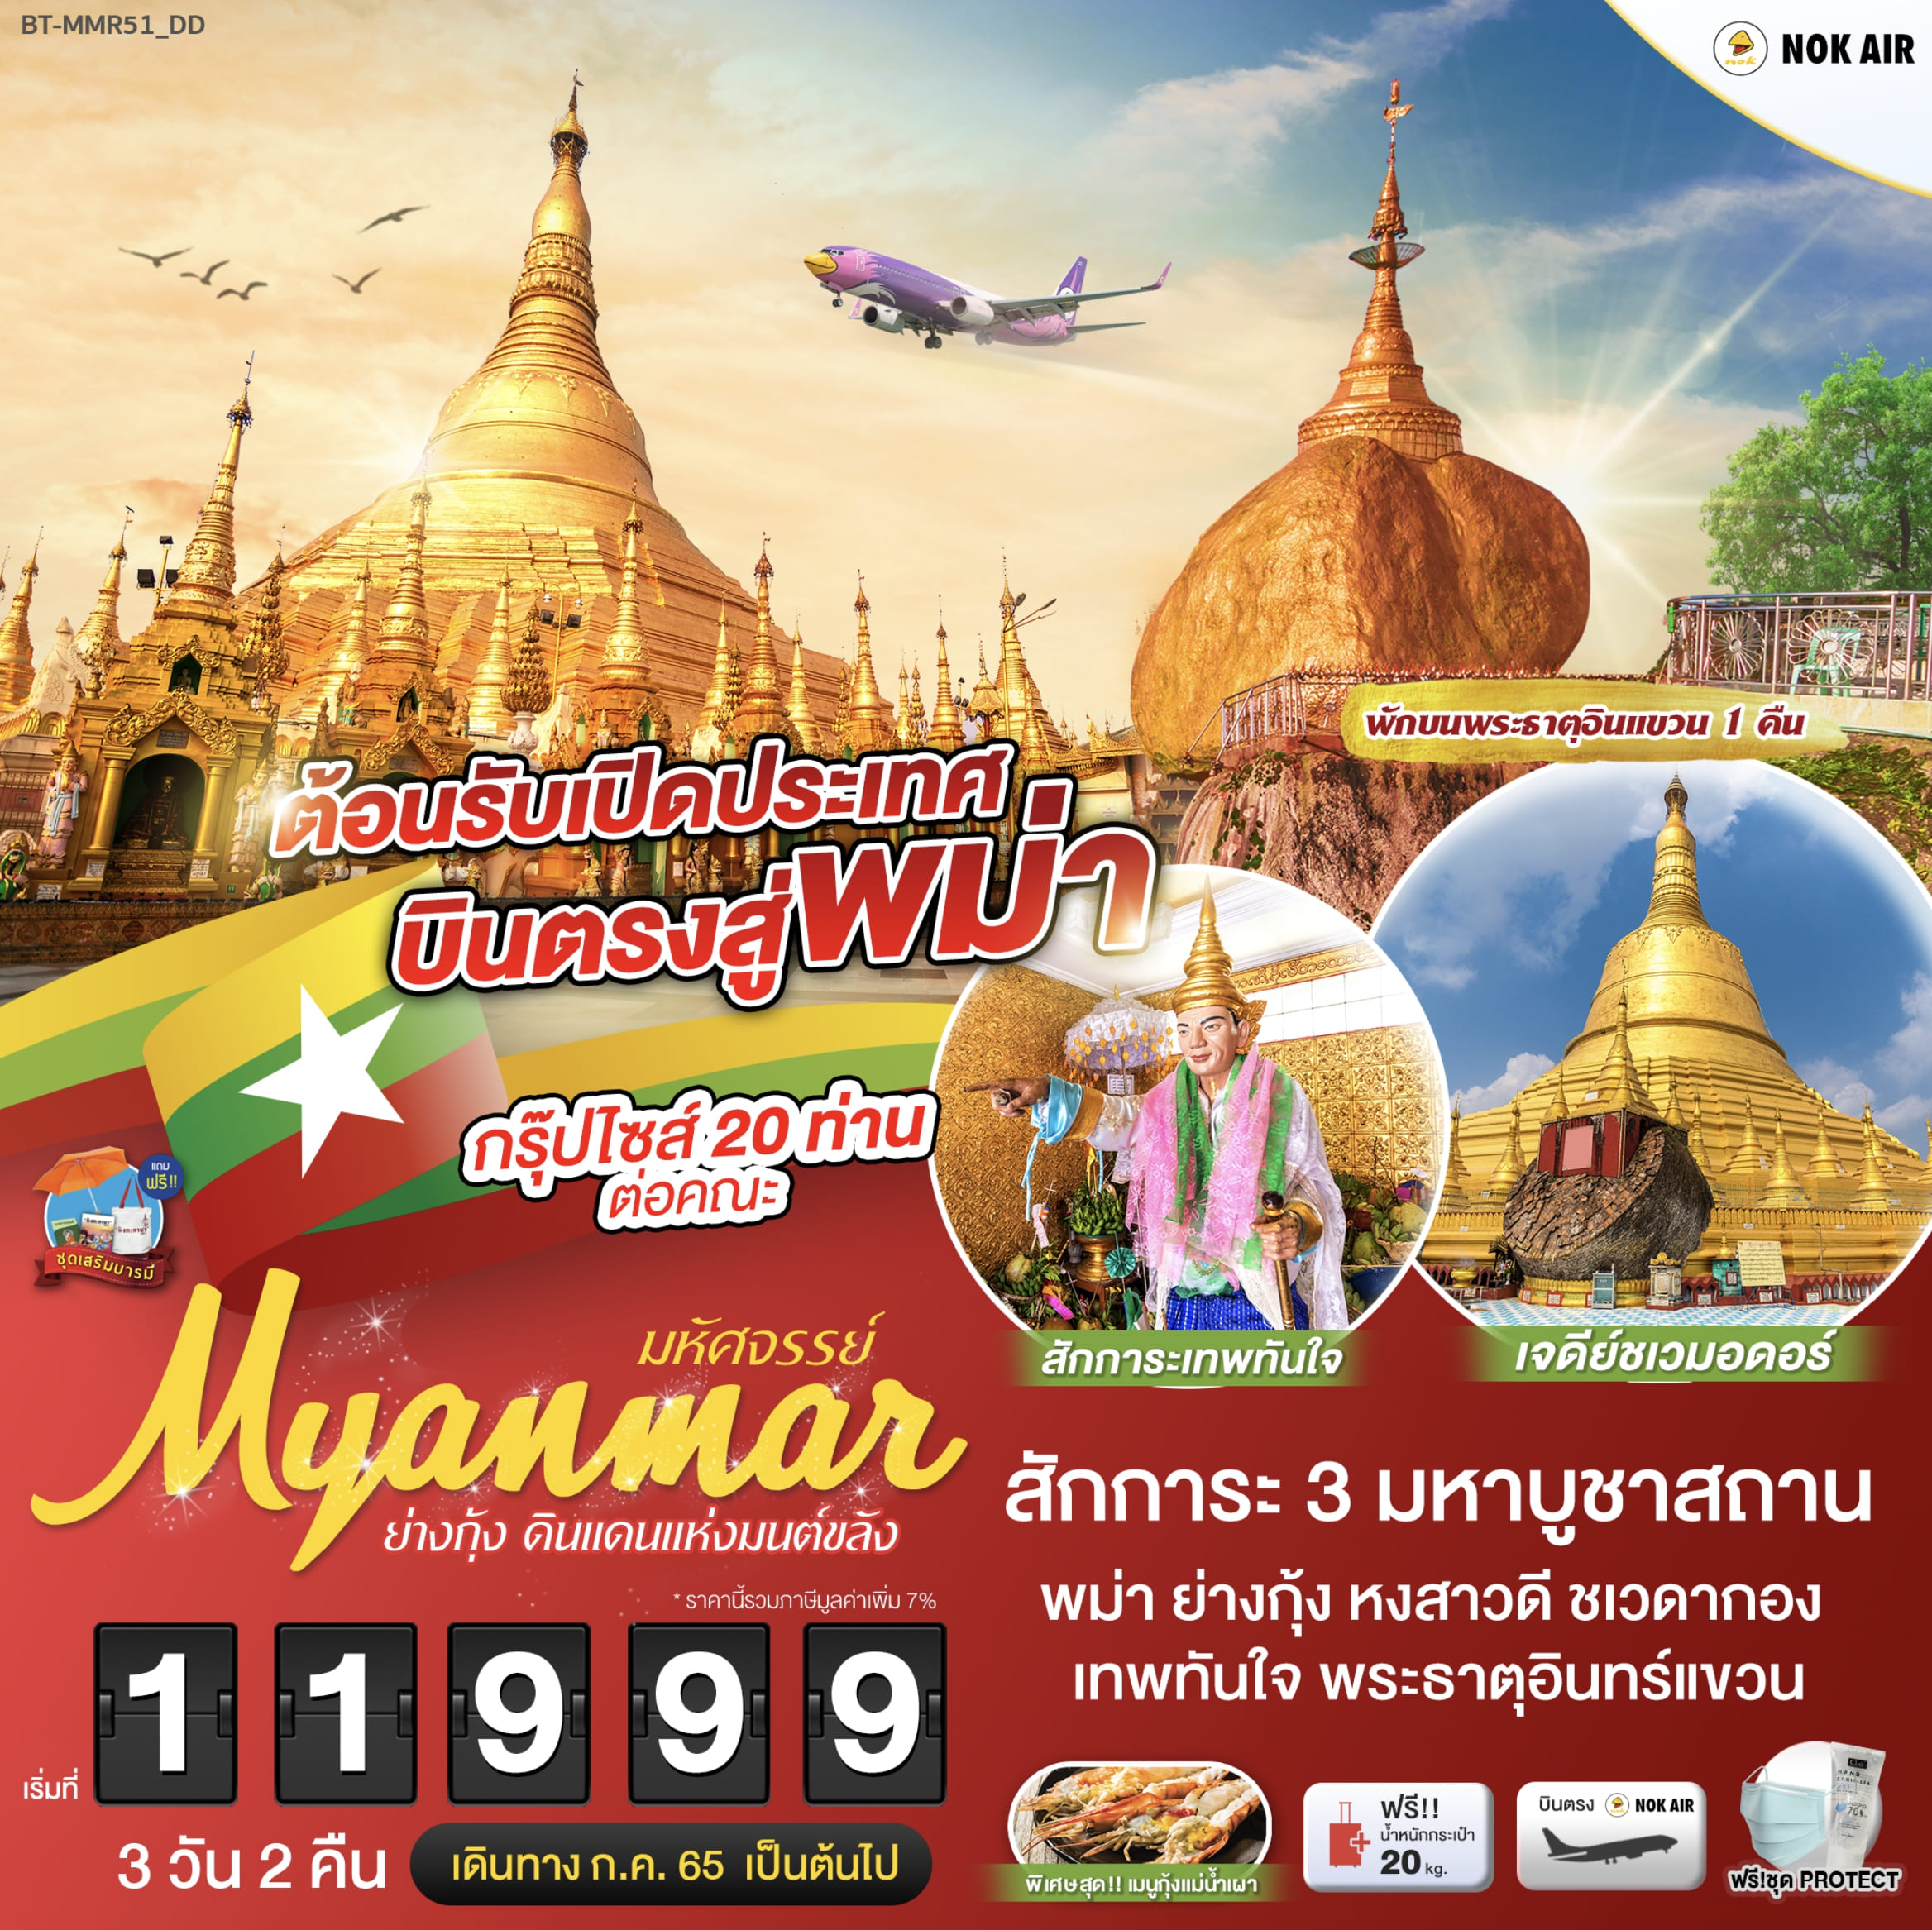 มหัศจรรย์..พม่า ย่างกุ้ง ต้อนรับเปิดประเทศ 3 วัน 2 คืน โดยสายการบินนกแอร์ (DD) JUL-SEP 22